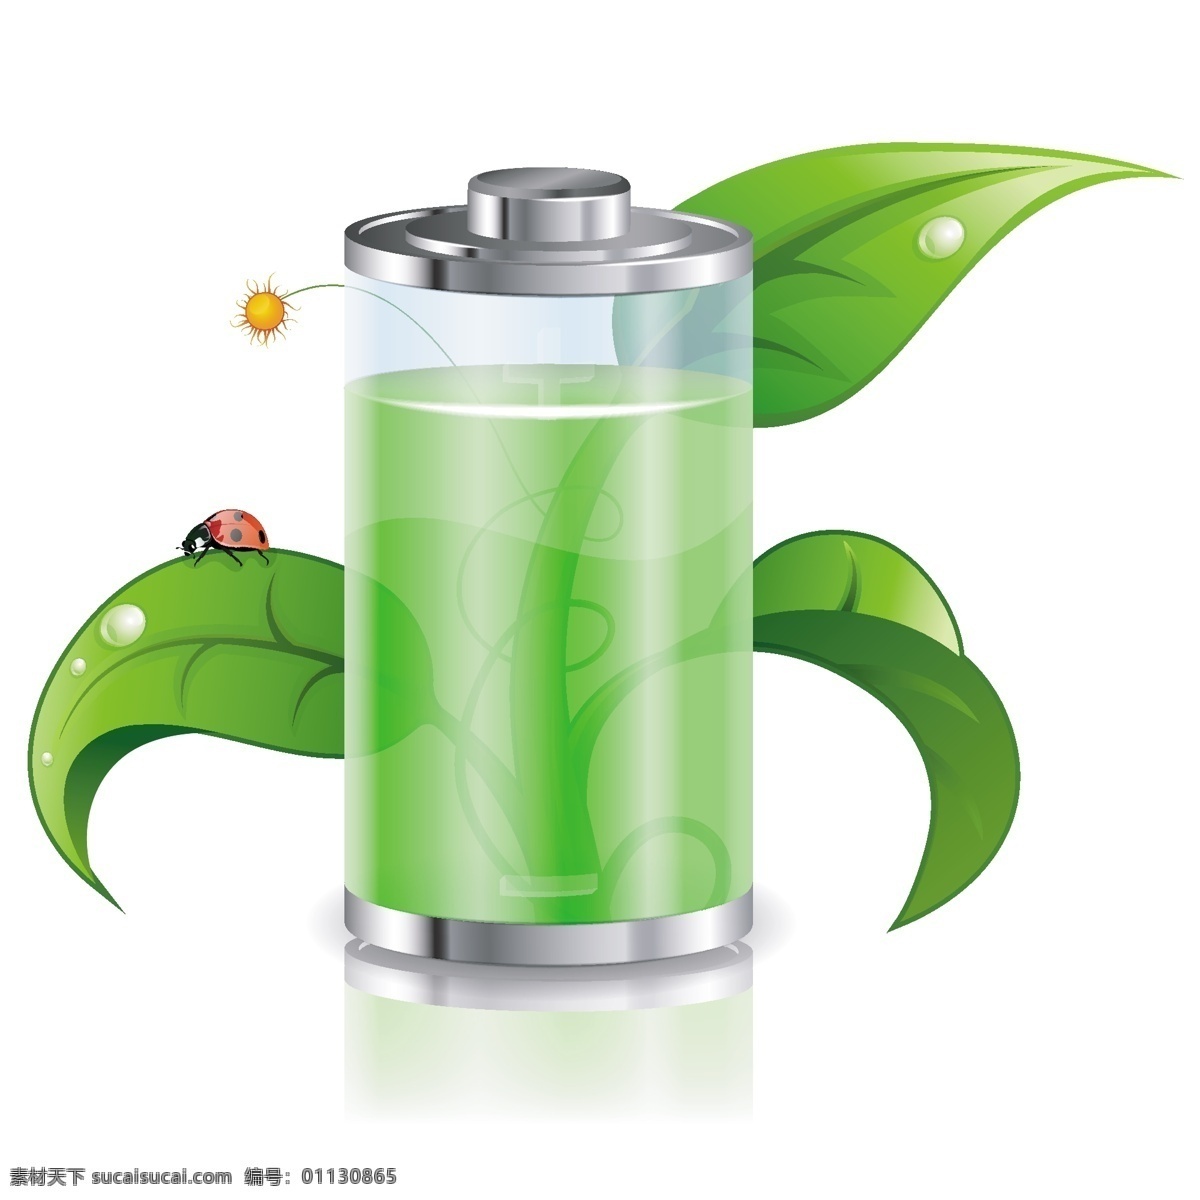 透明电池素材 电池 新能源 绿色 质感电池 透明电池 生机 生活百科 生活用品